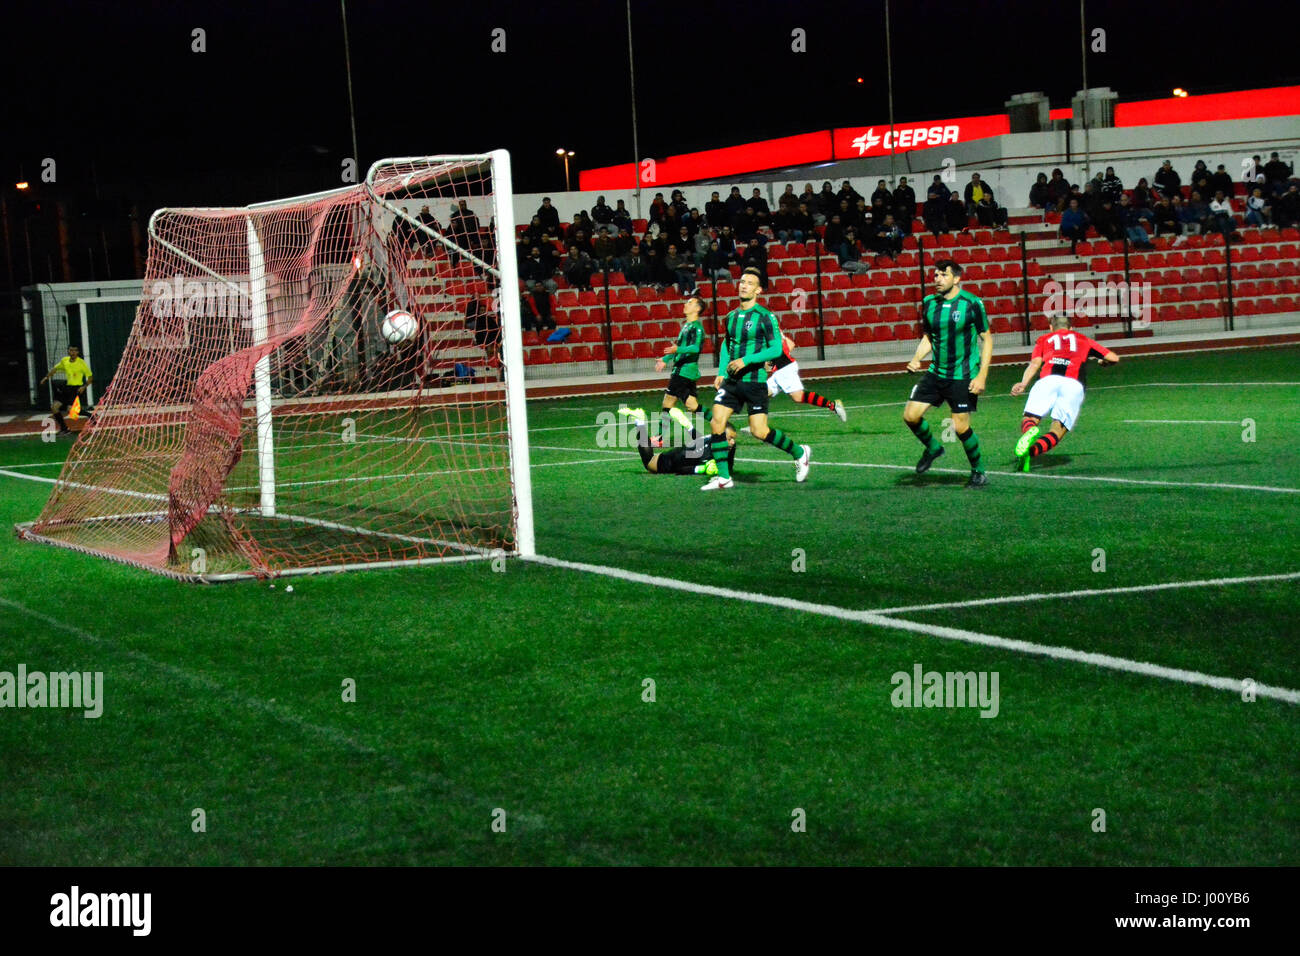 de fútbol de fotografías e imágenes de alta resolución Alamy